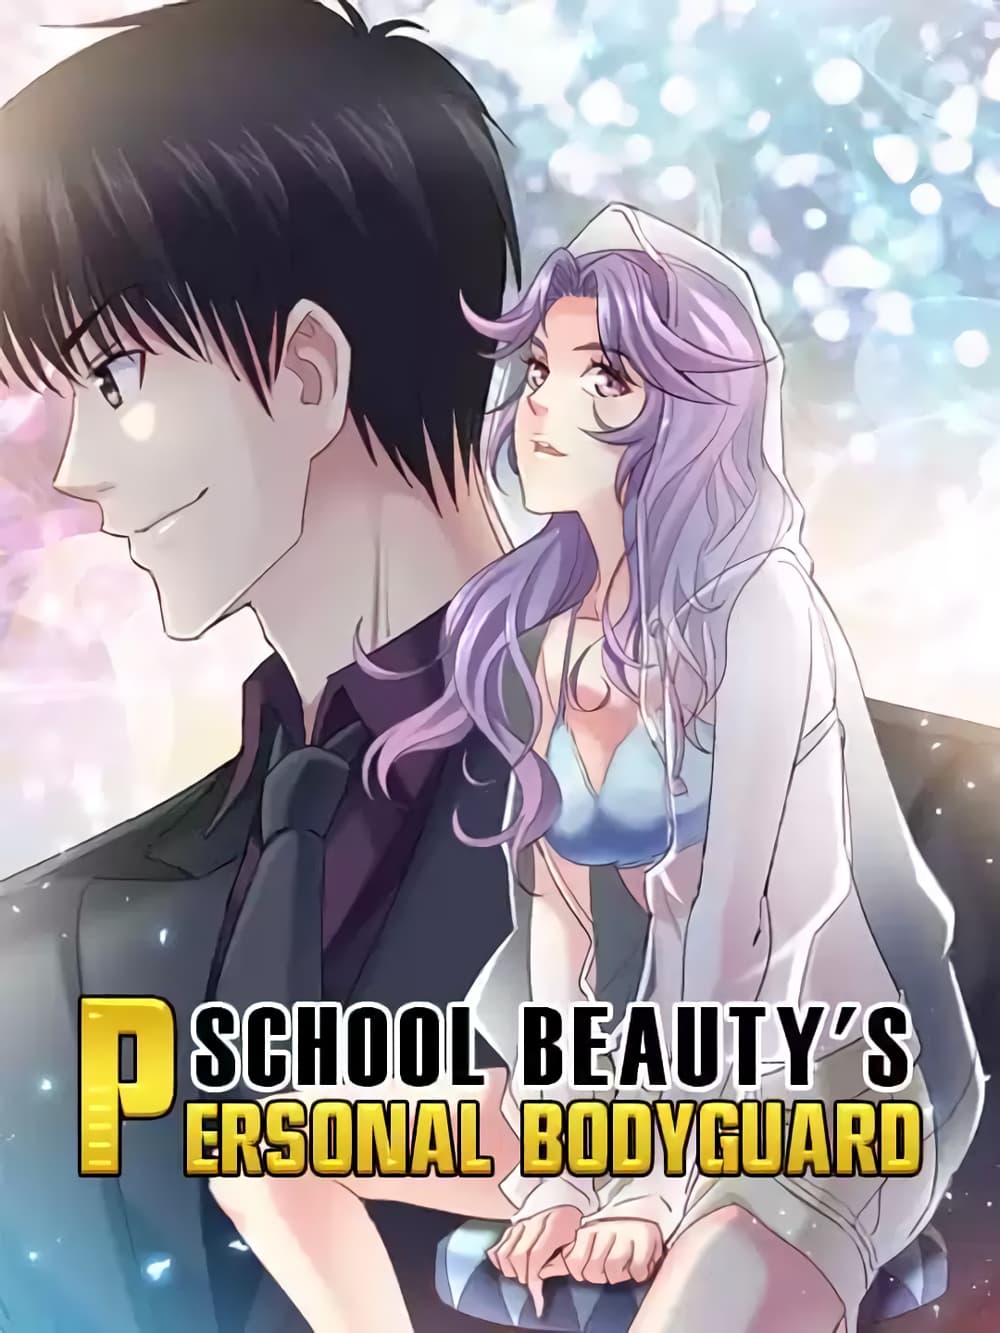 School Beauty’s Bodyguard 280 (1)